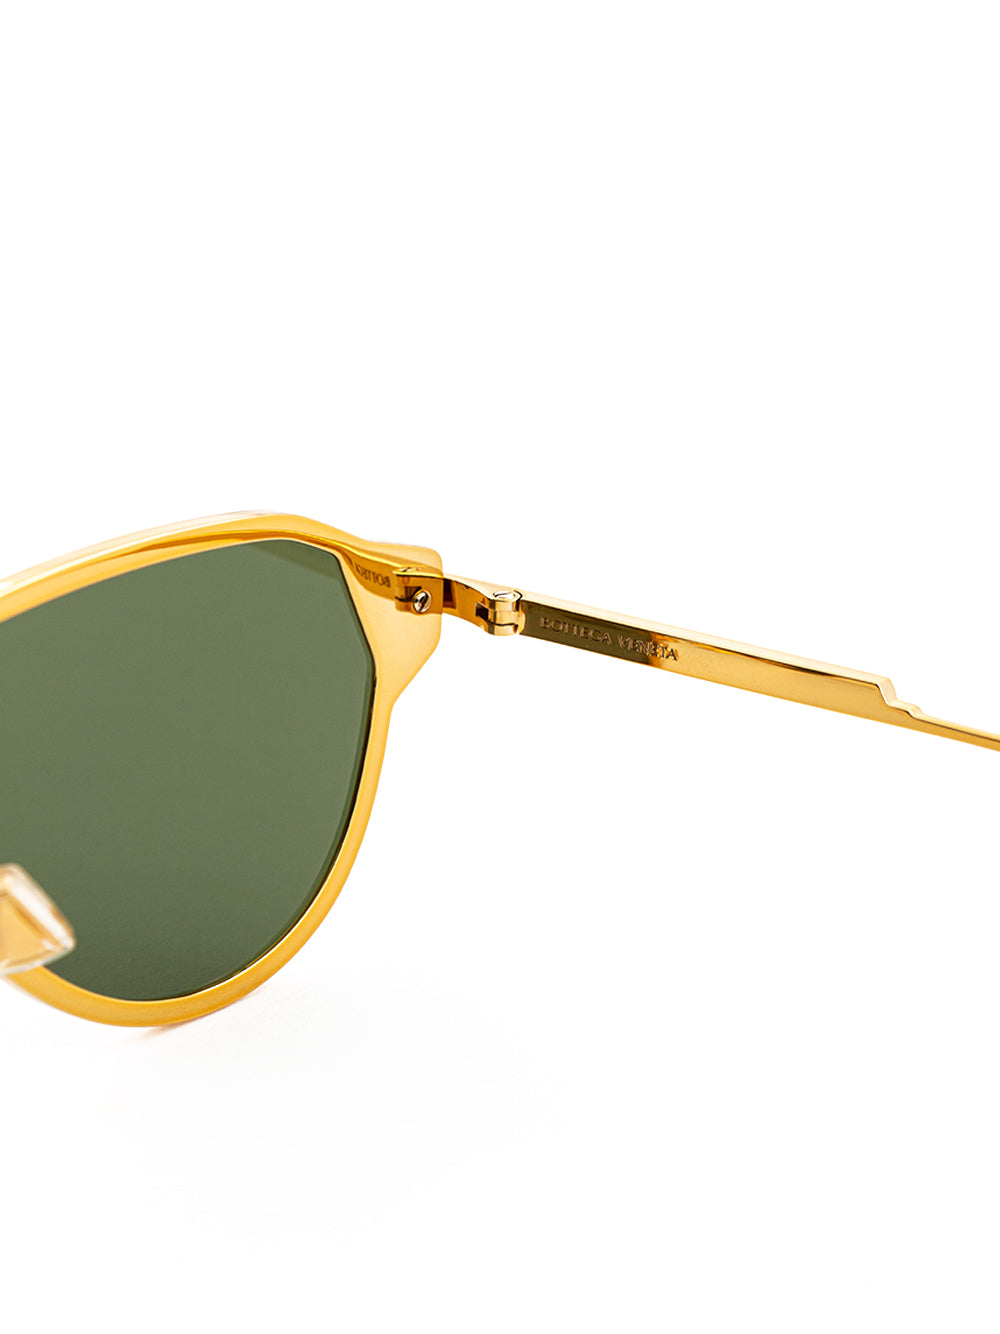 Bottega Veneta Gold Sunglasses